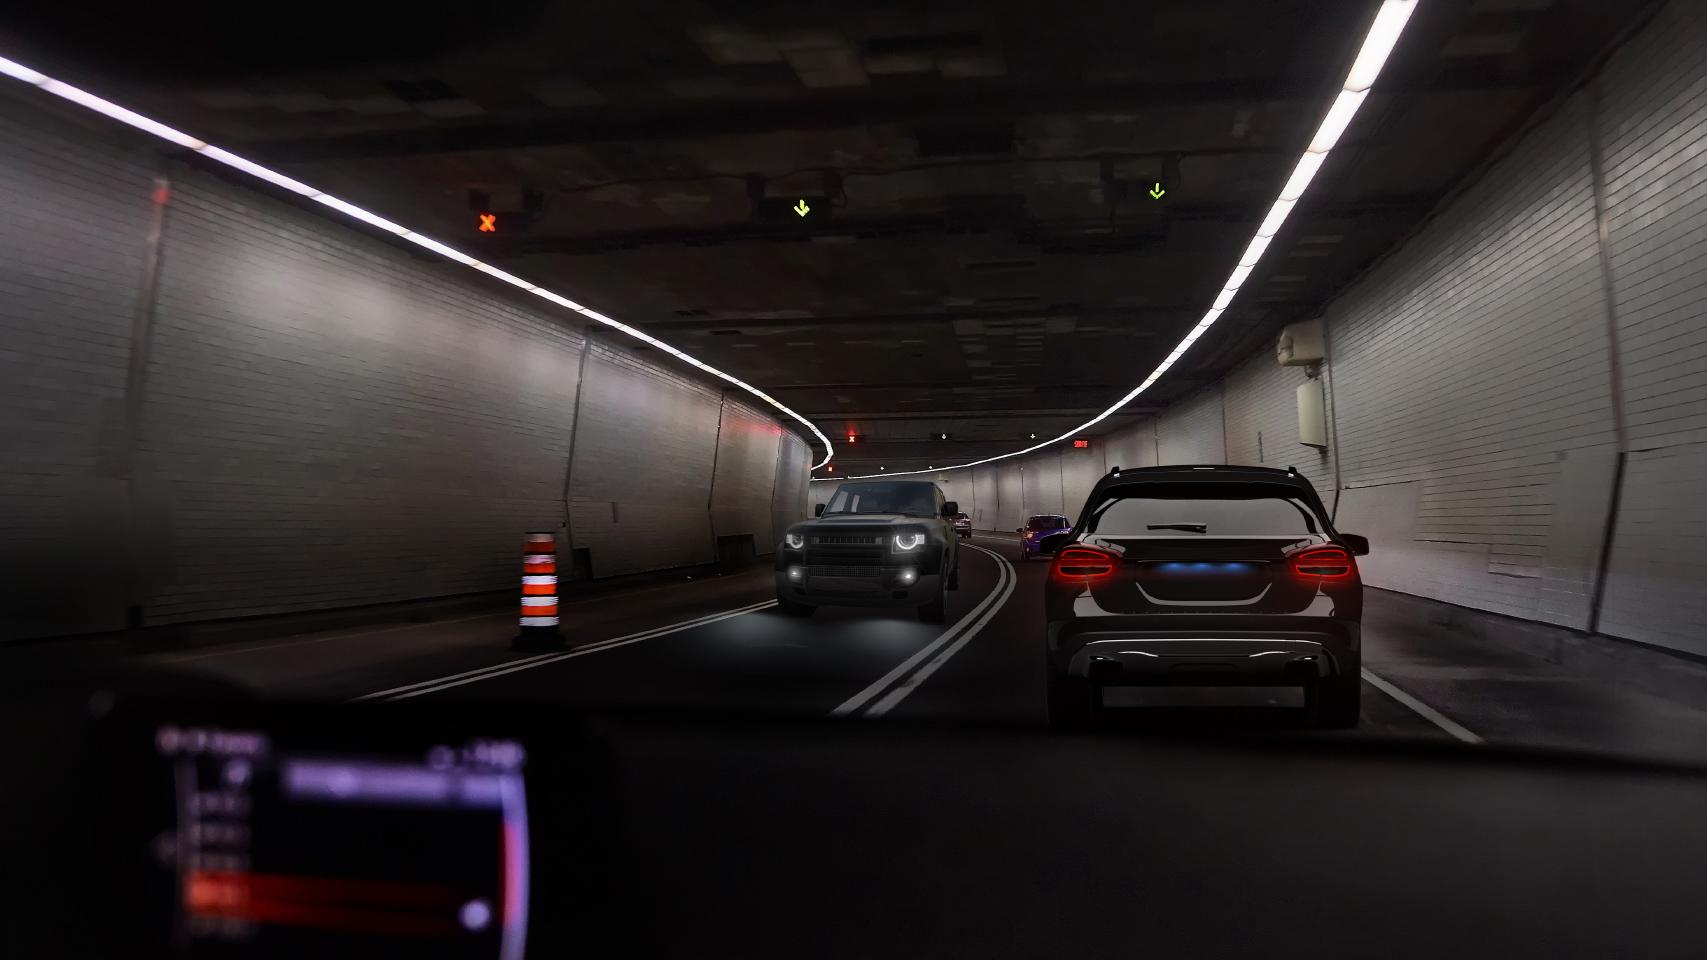 차량이 통행 중인 터널에서 운전자의 시점으로 본 두 개의 모습. 한 이미지에서는 차량 불빛과 터널 조명 때문에 눈부심을 느끼며 다른 이미지에서는 눈부심을 훨씬 적게 느낀다.